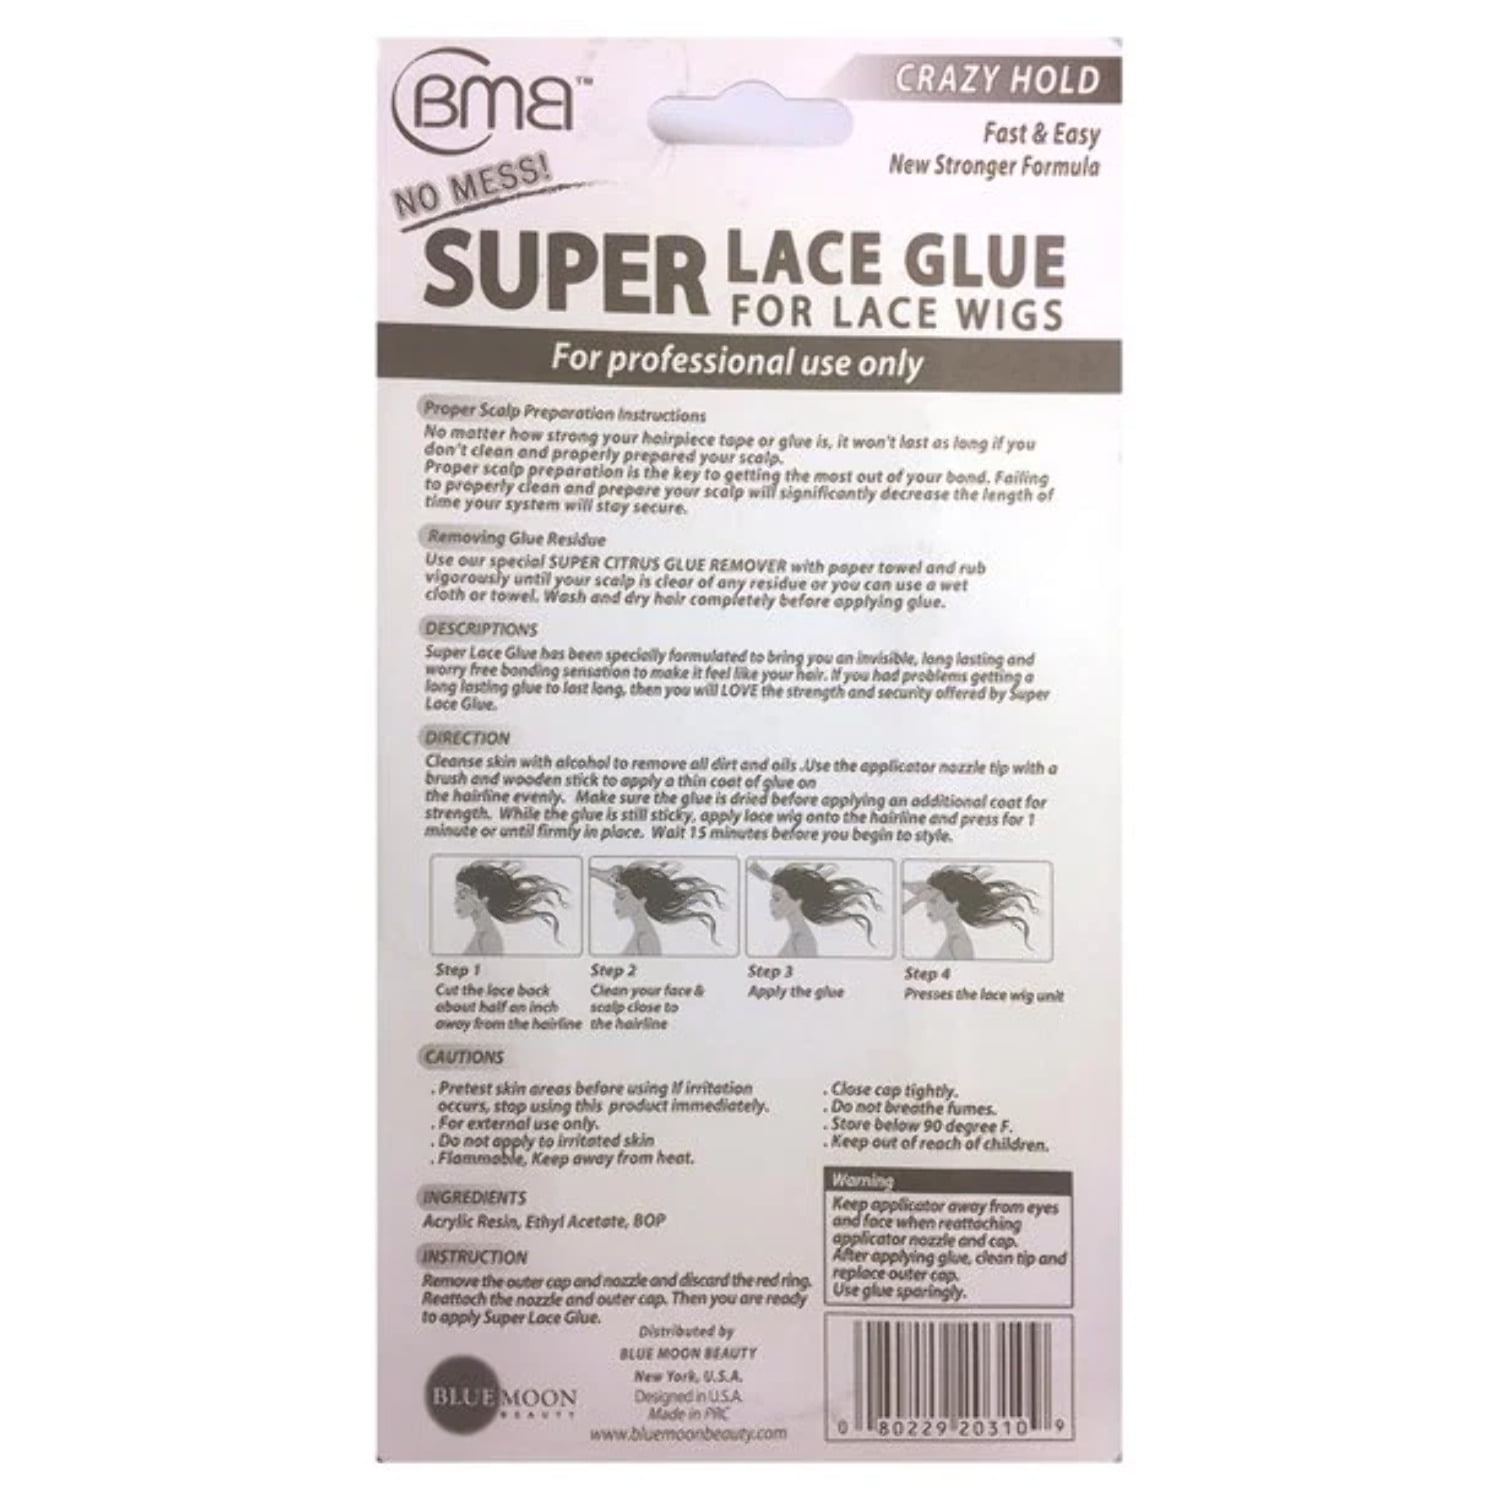 Super Lace Glue Crazy Hold